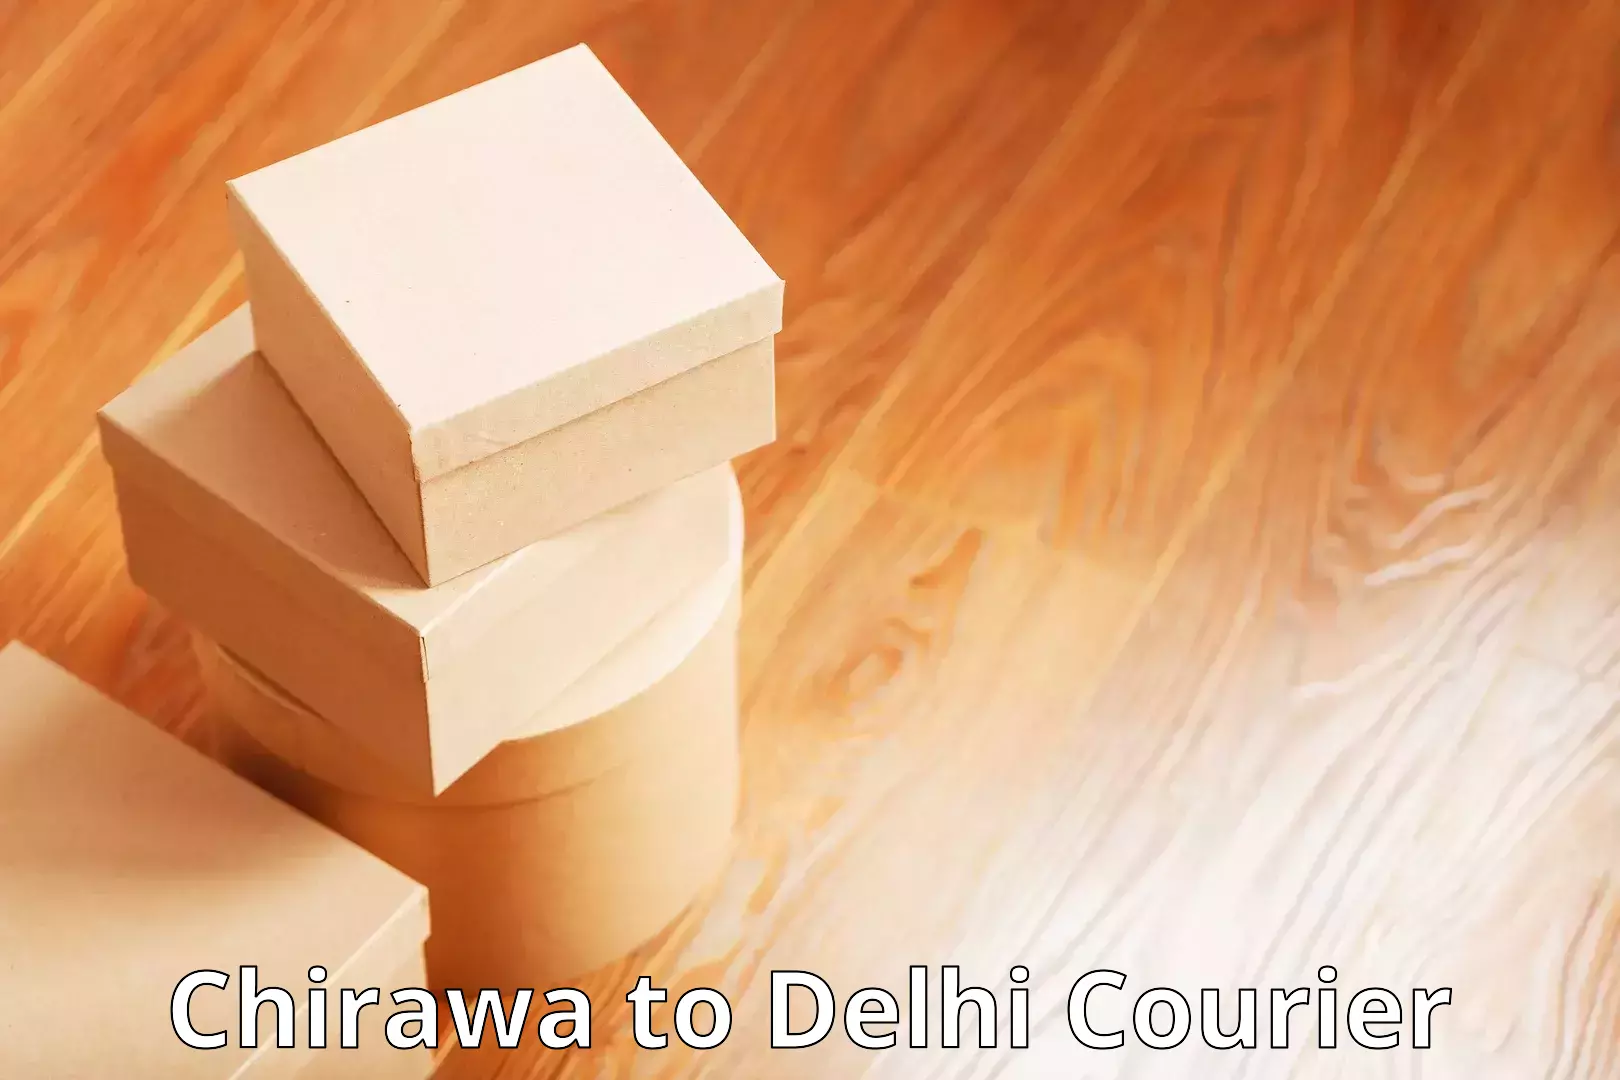 Reliable delivery network Chirawa to Jamia Hamdard New Delhi